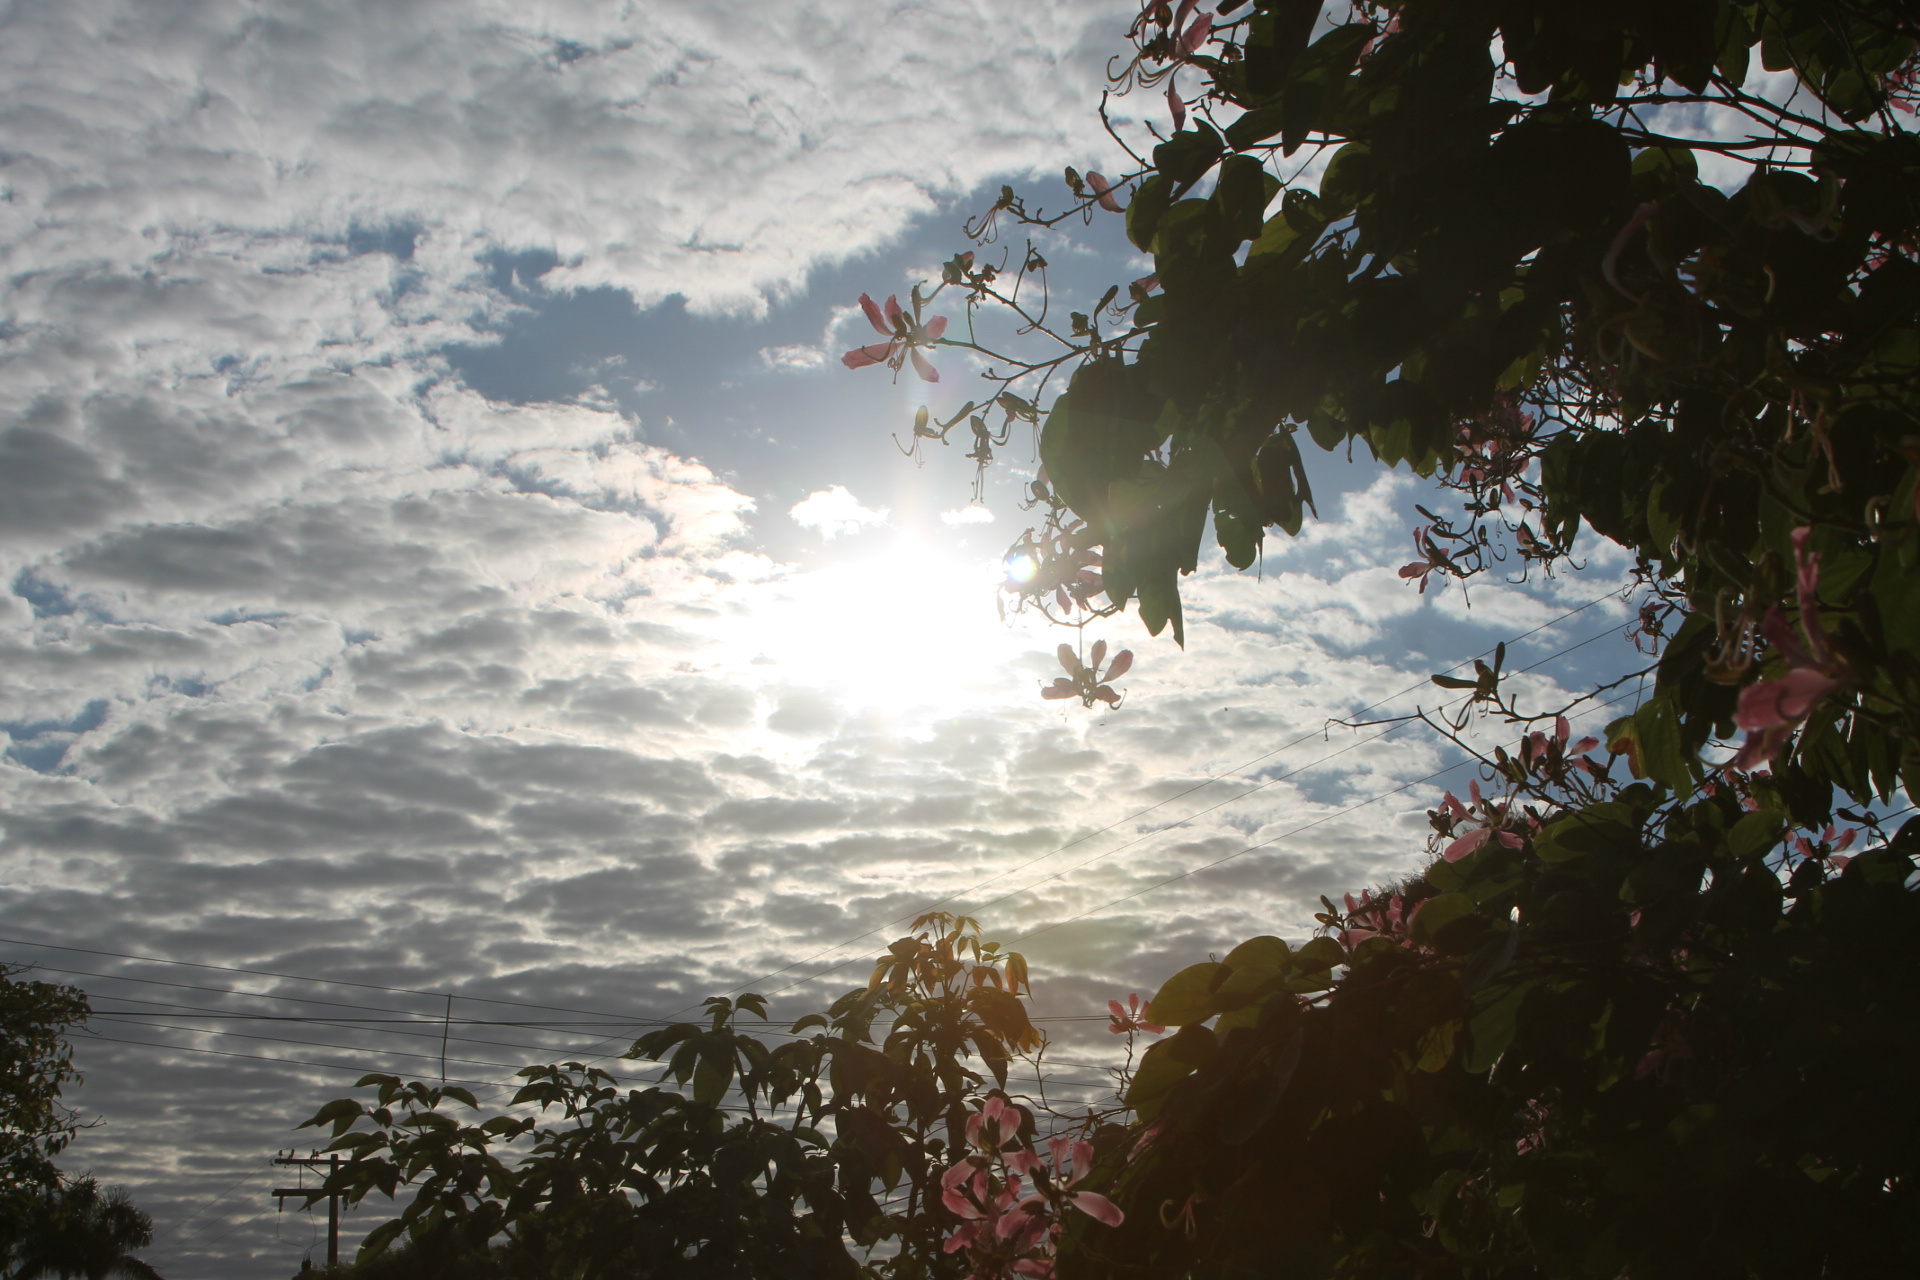 Céu com muitas nuvens nesta manhã em Três Lagoas. (Foto: Kênia Guimarães)